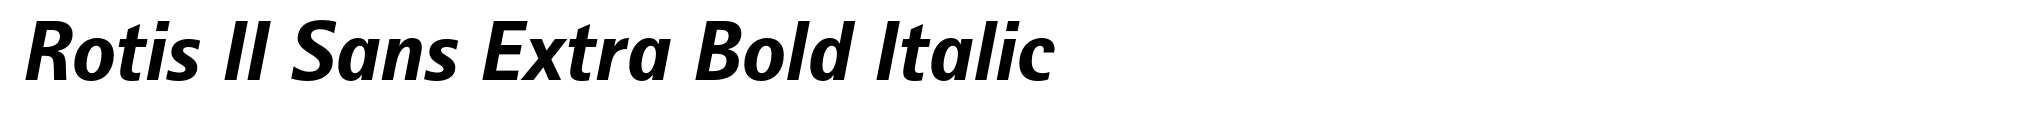 Rotis II Sans Extra Bold Italic image